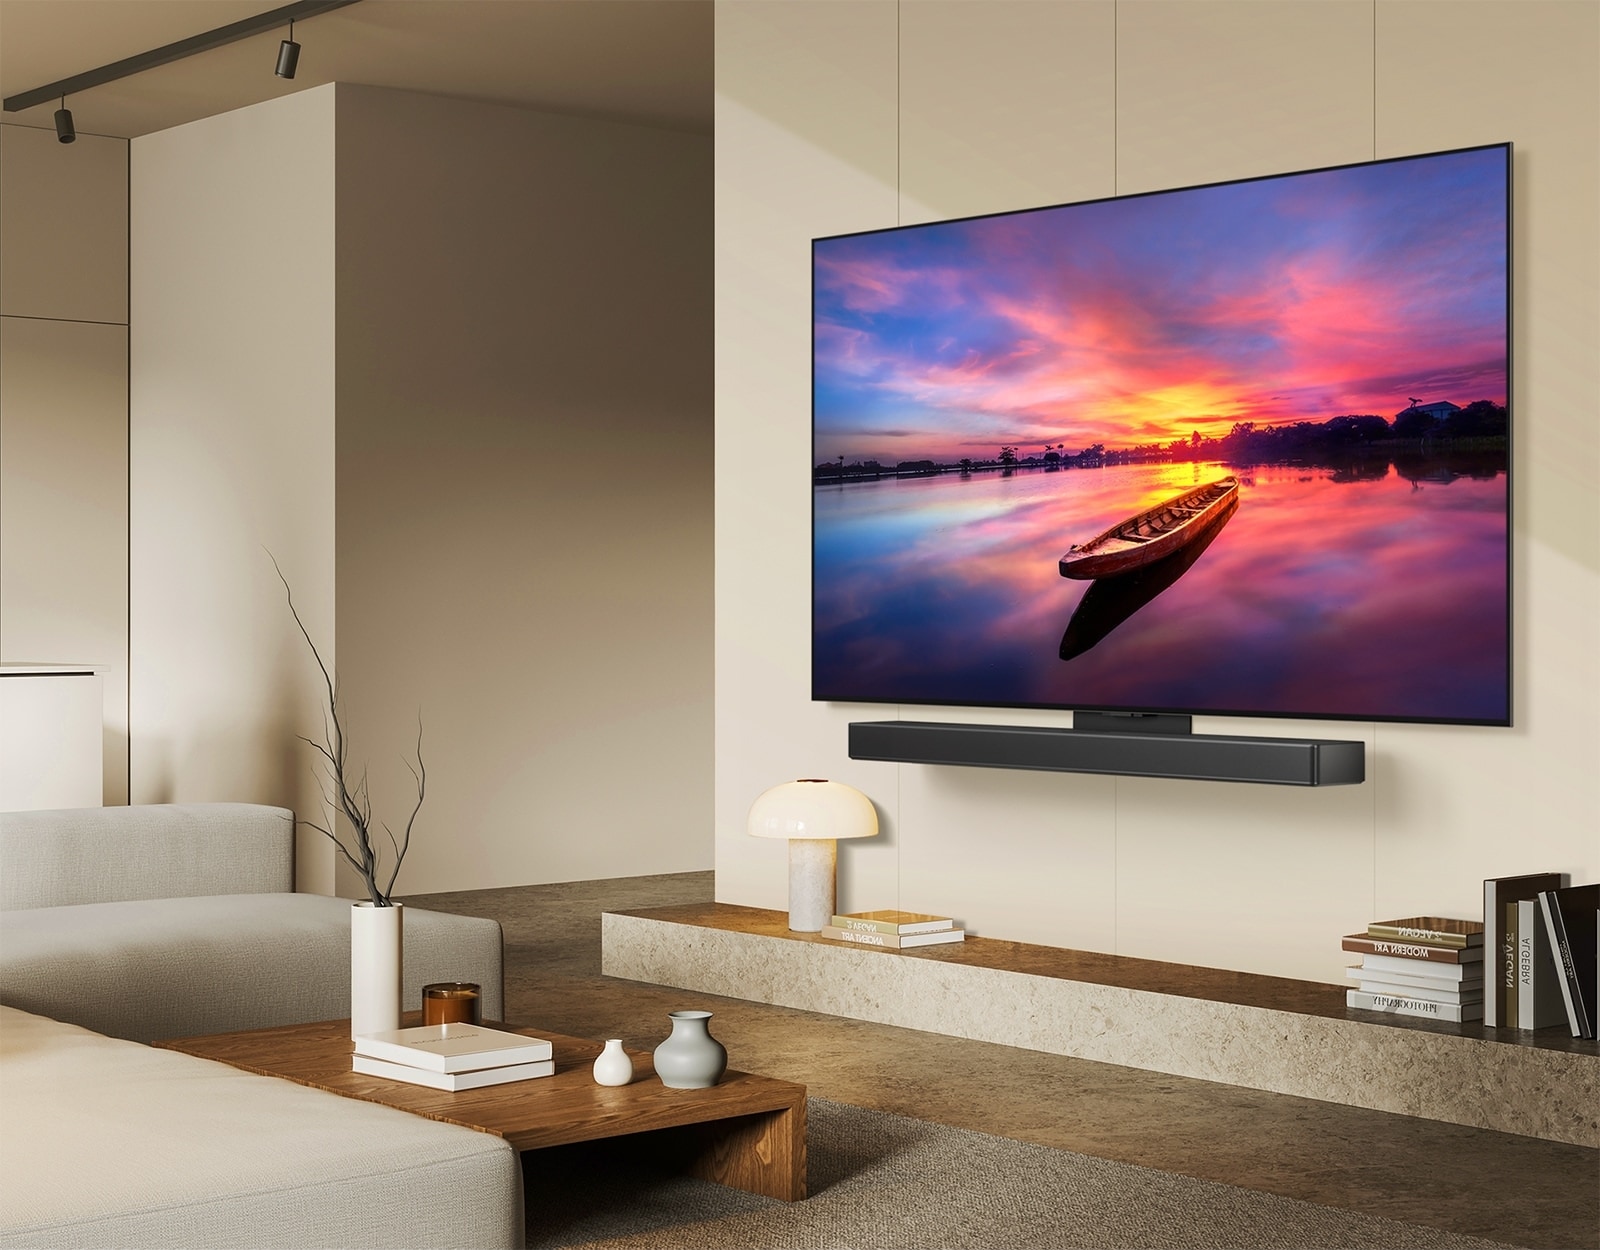 Der LG OLED evo TV C4, 45 Grad nach links geneigt, zeigt einen wunderschönen Sonnenuntergang mit einem Boot auf einem See. Der Fernseher ist über das Matching-Kit an einer LG Soundbar in einem minimalistischen Wohnraum befestigt.